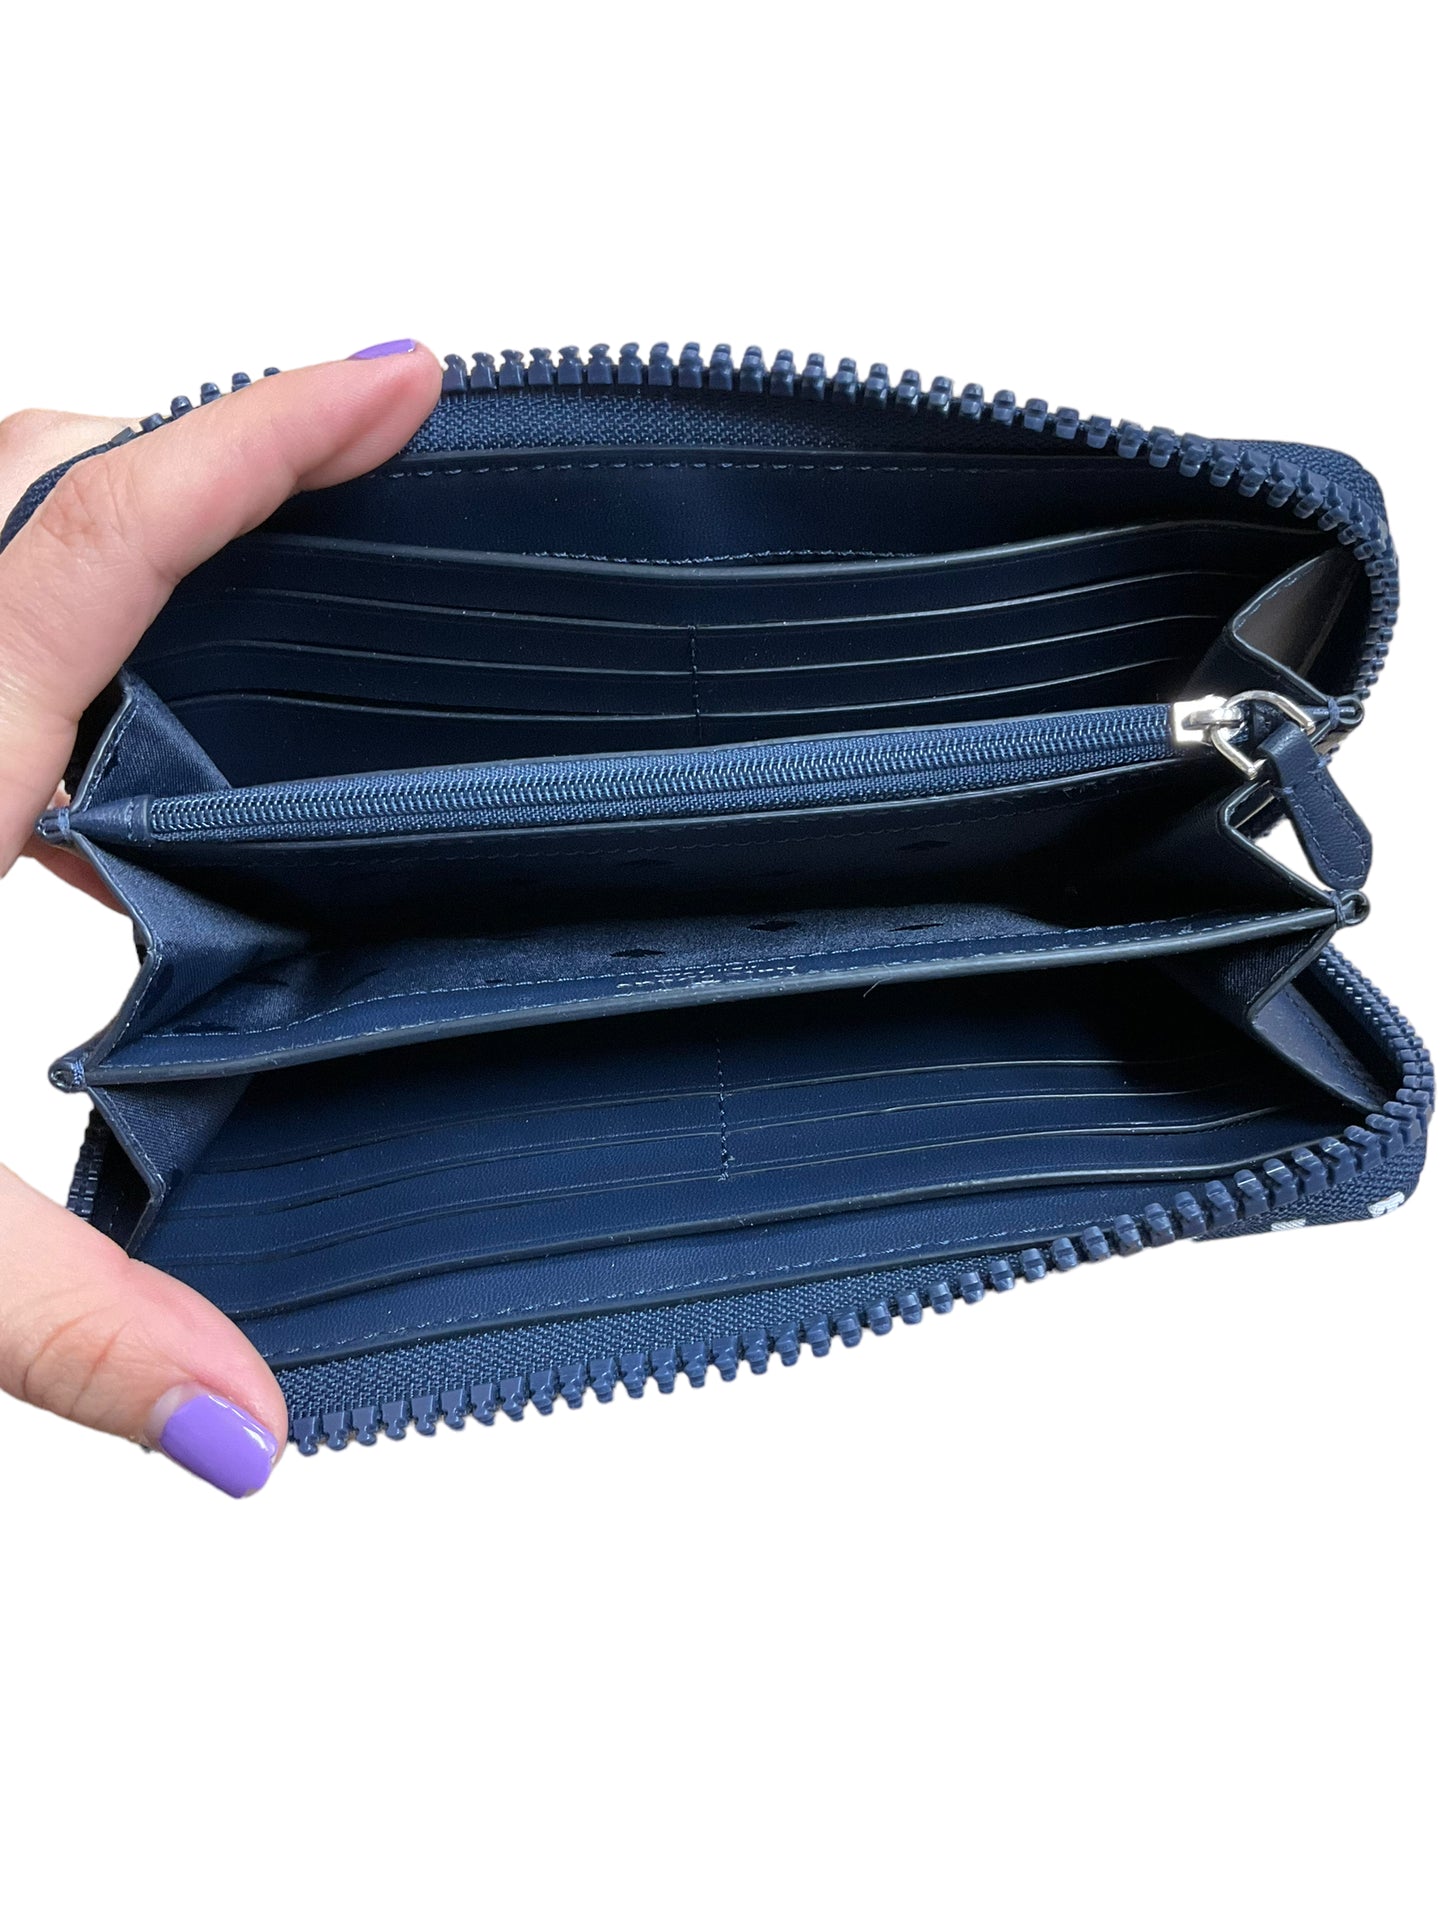 Wallet Designer By Kate Spade  Size: Large